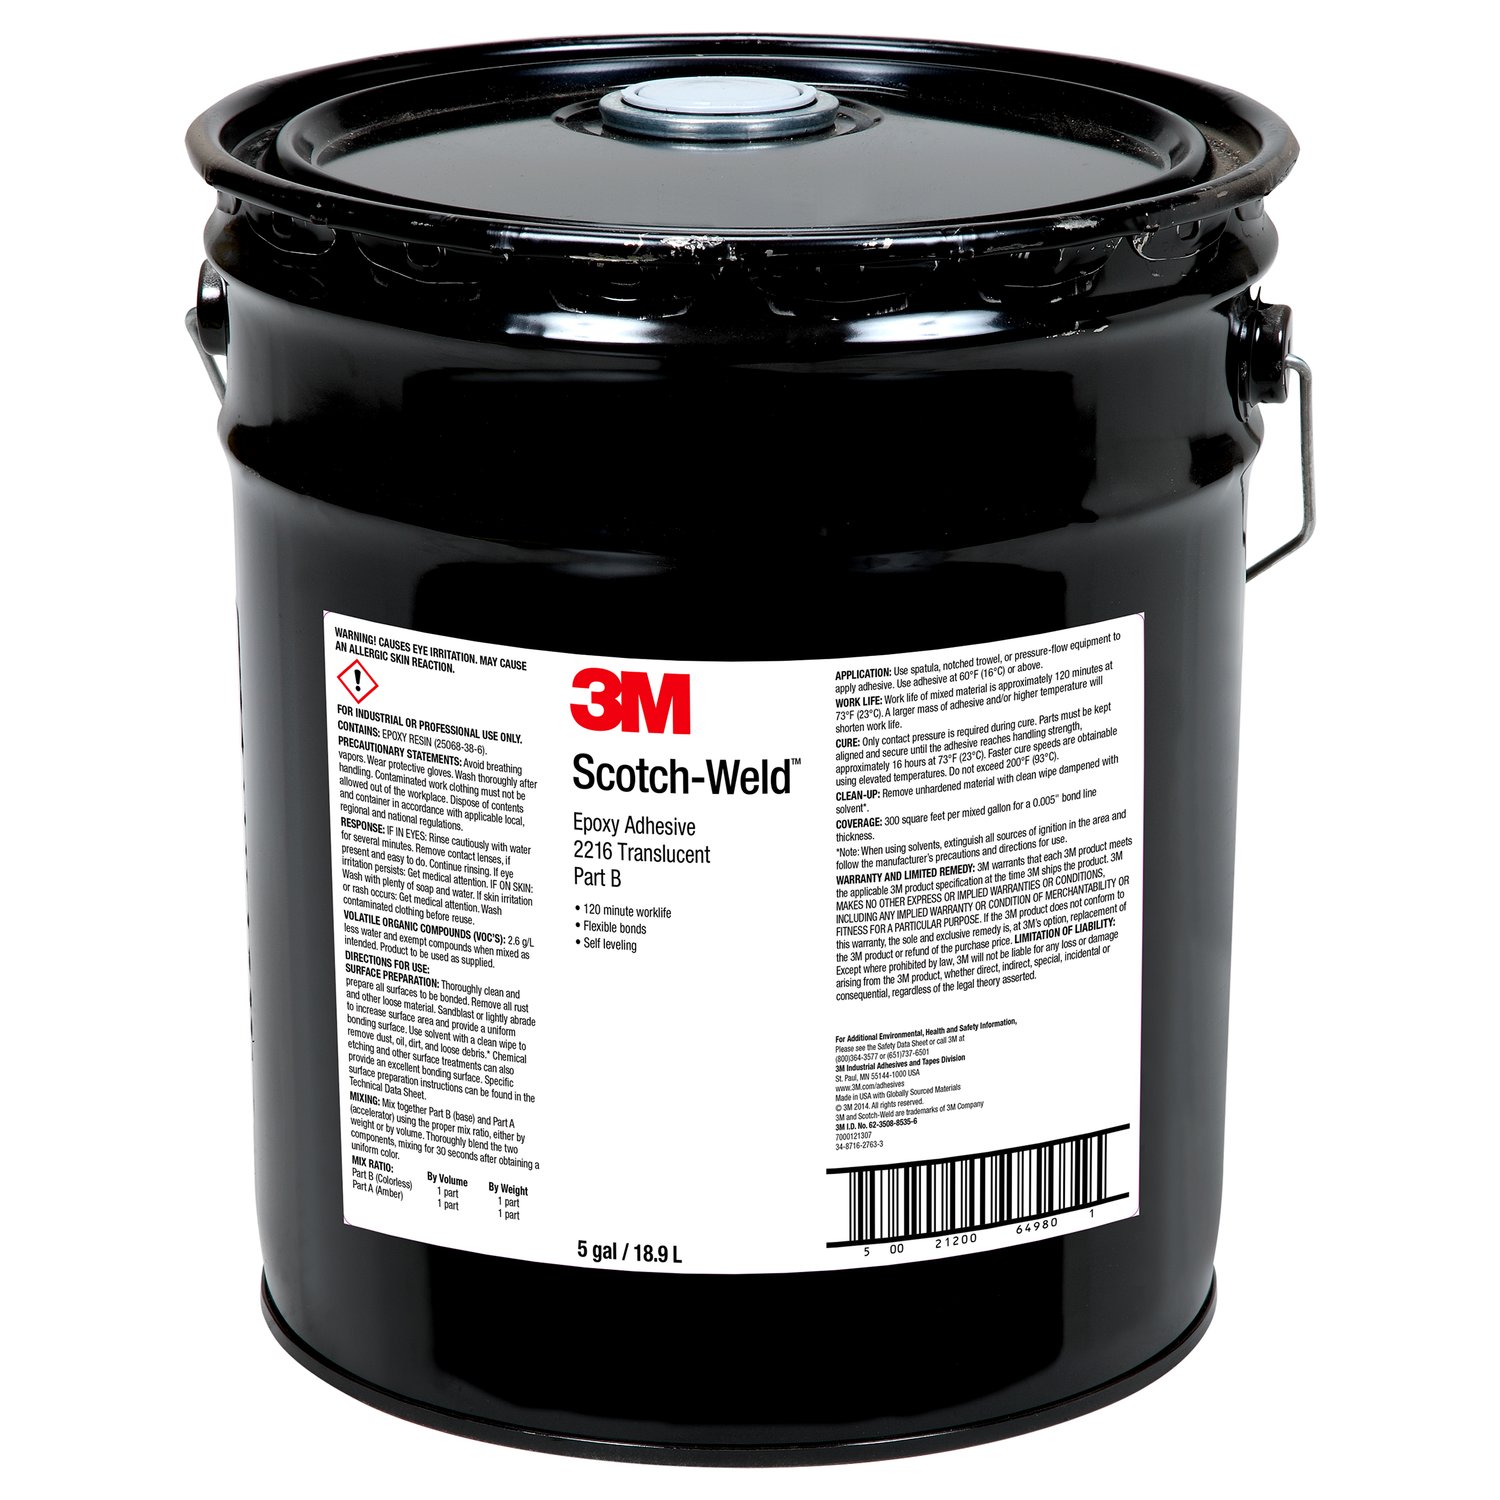 7000121307 - 3M Scotch-Weld Epoxy Adhesive 2216, Translucent, Part B, 5 Gallon Pour
Spout (Pail), 1 Can/Drum